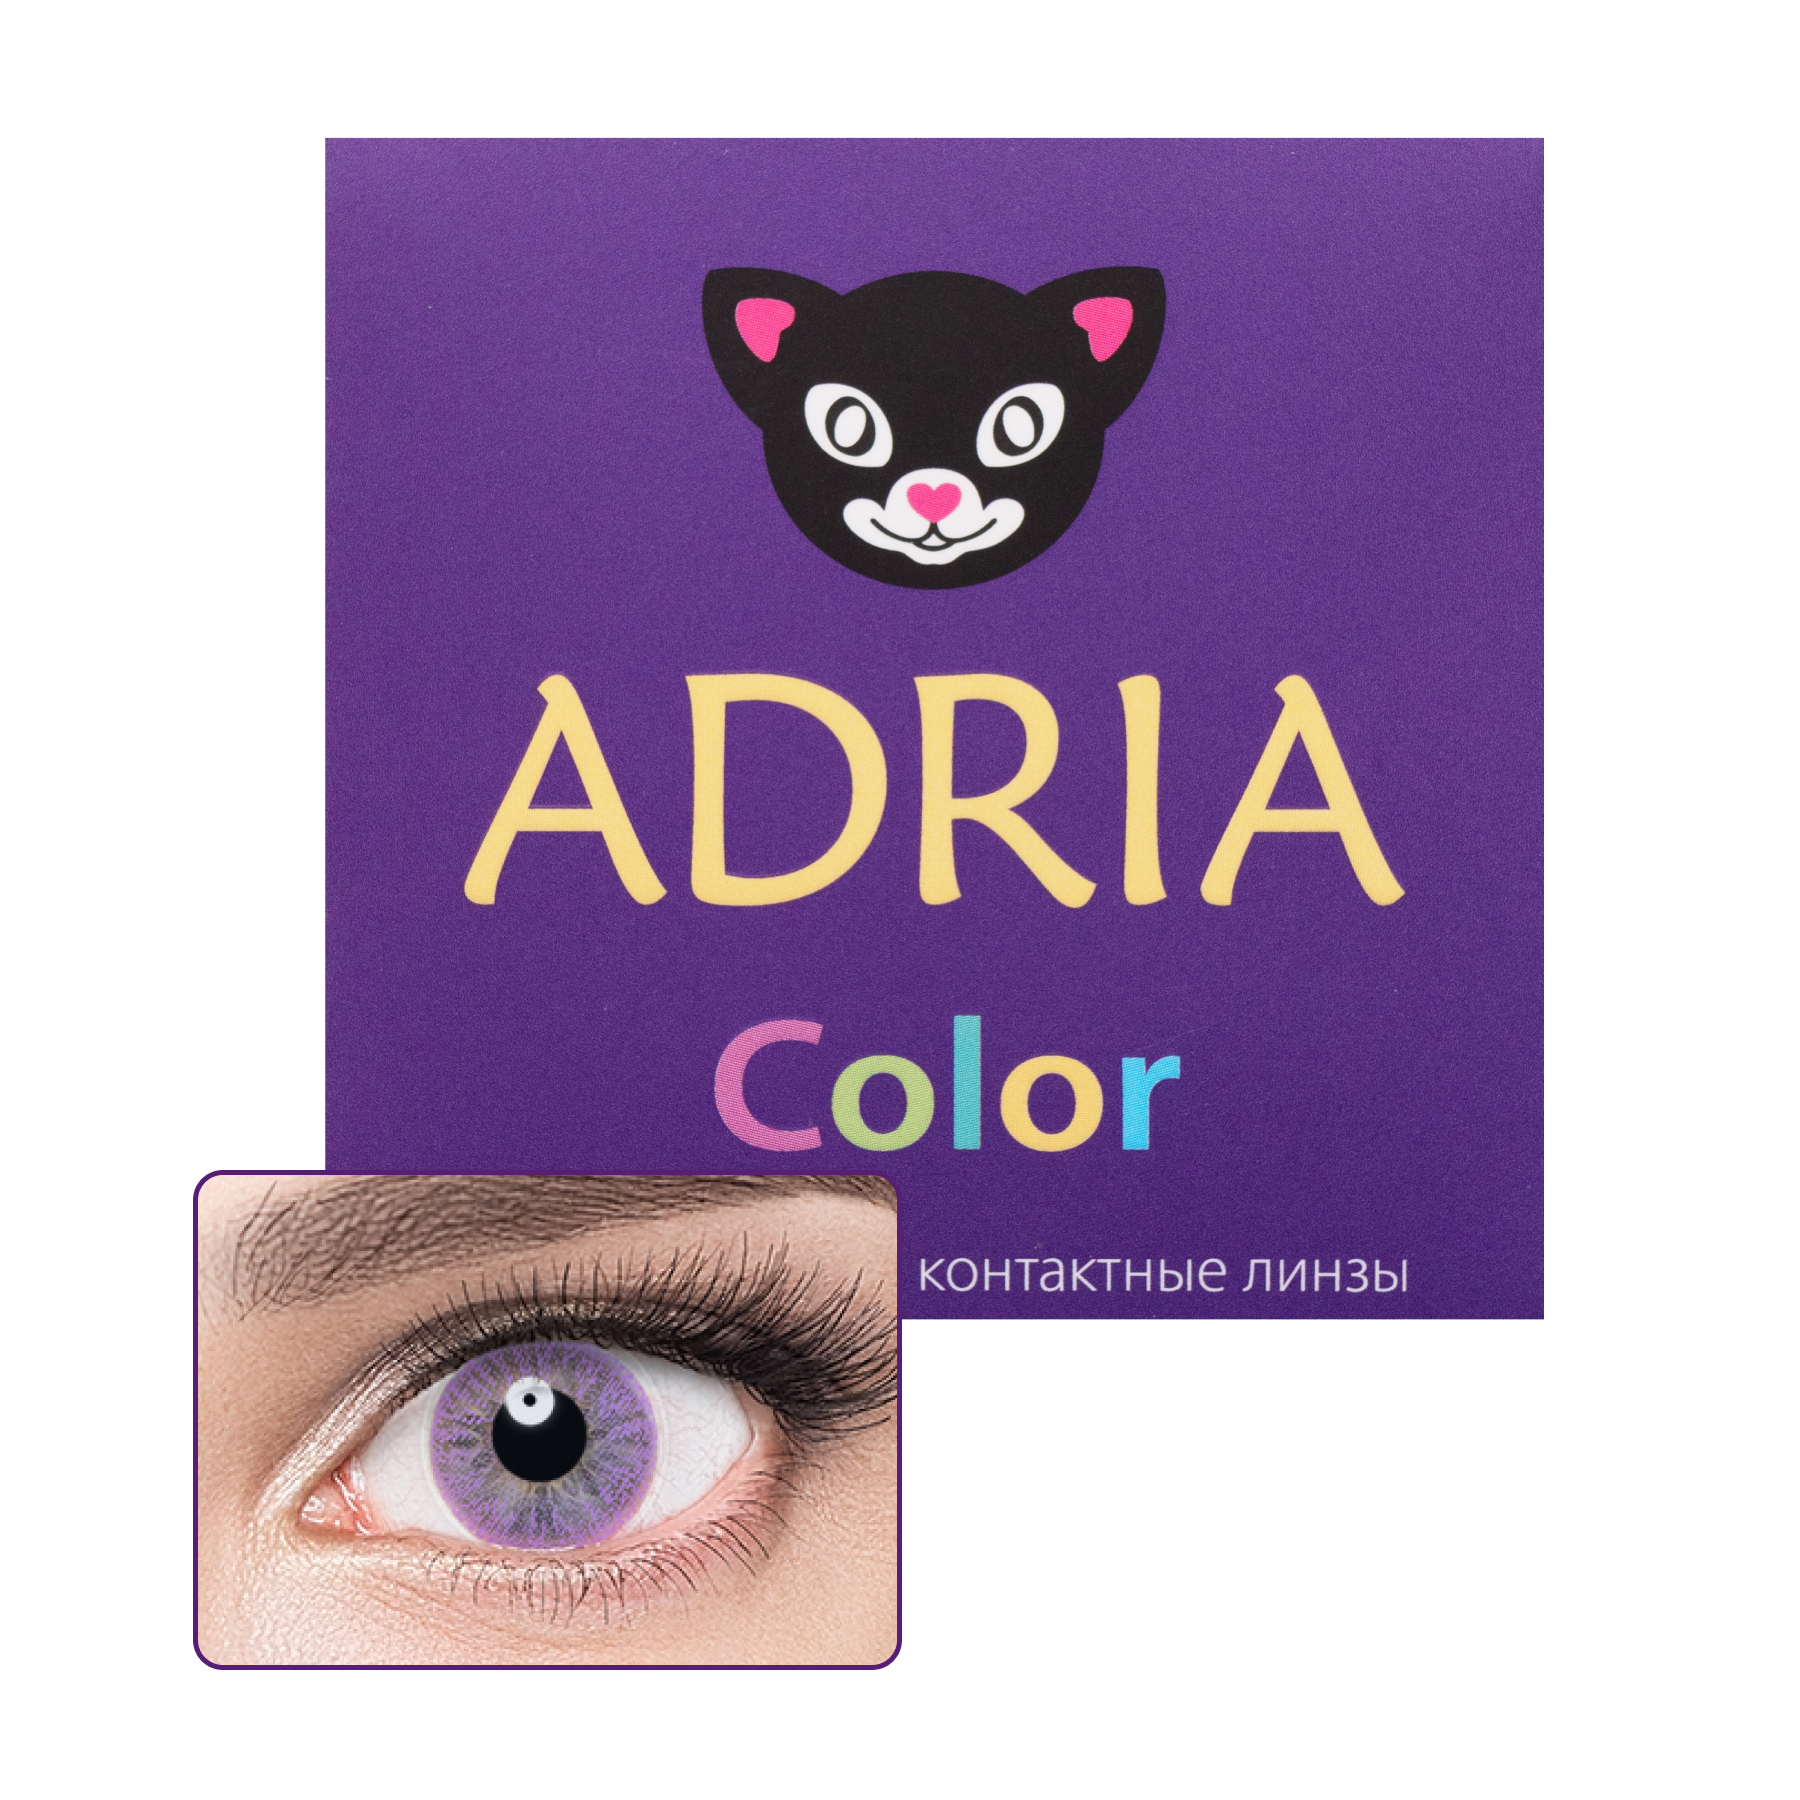 Купить COLOR 1 TONE 2 линзы, Цветные контактные линзы Adria 1T 2 pack PWR -3, 00, R 8.6, Lavender, фиолетовые